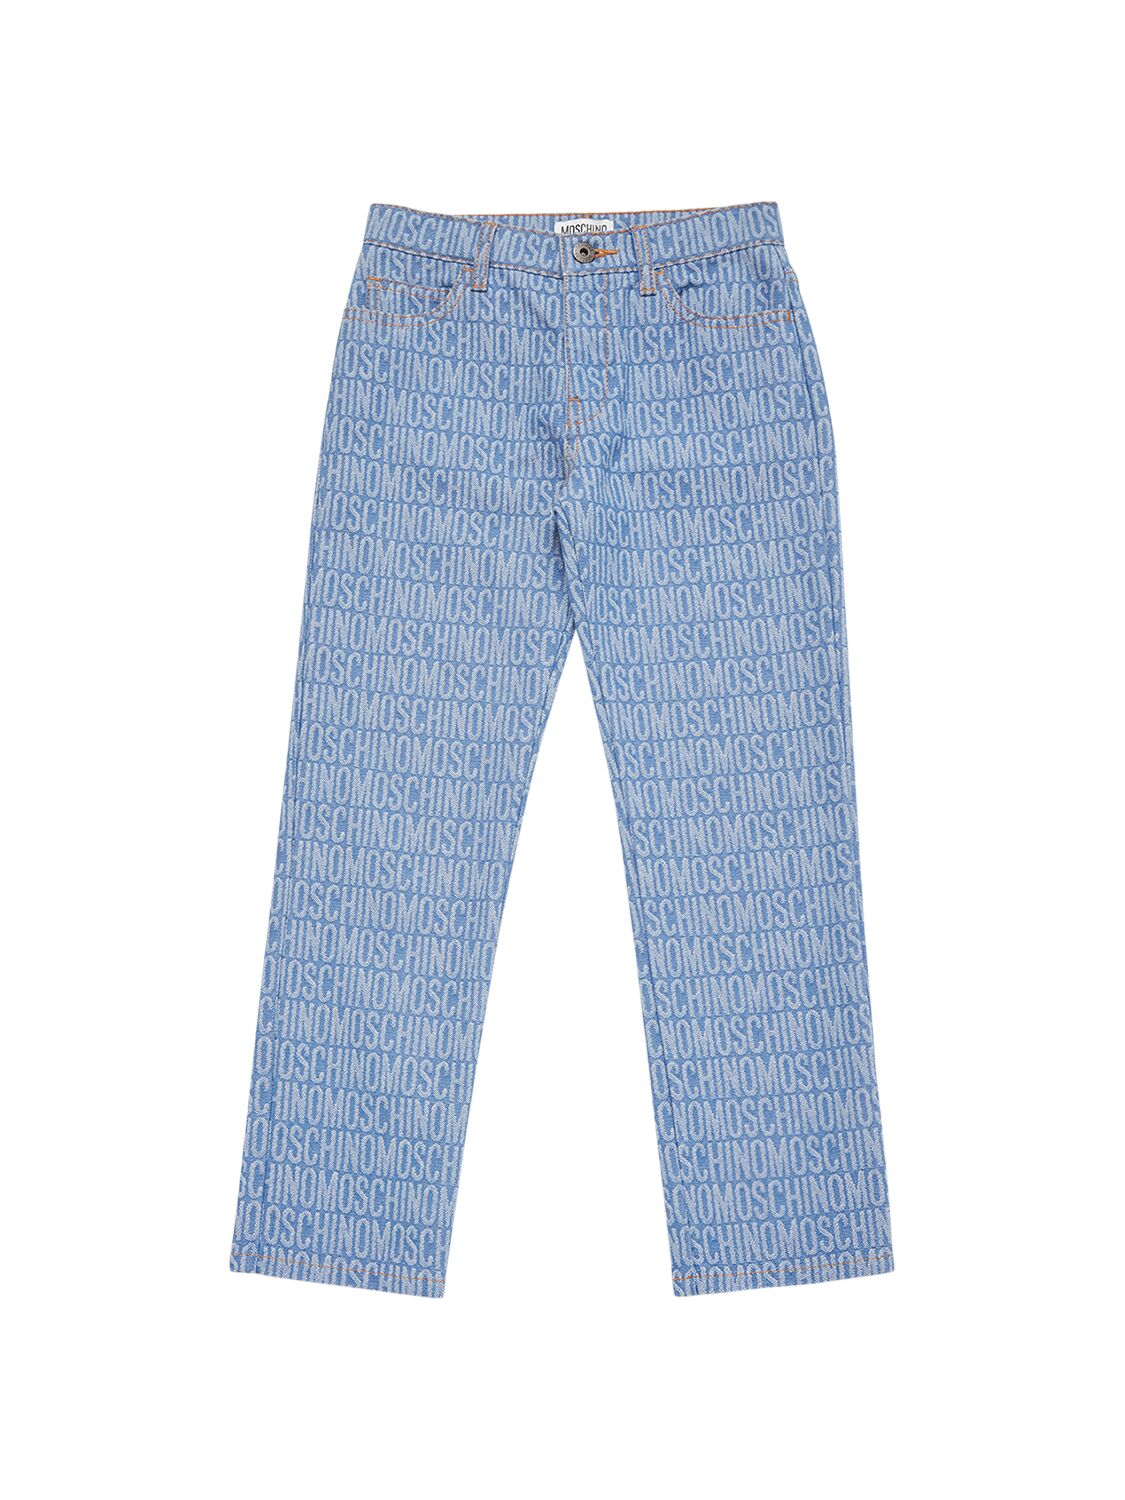 Moschino Kids' Cotton Denim Jeans